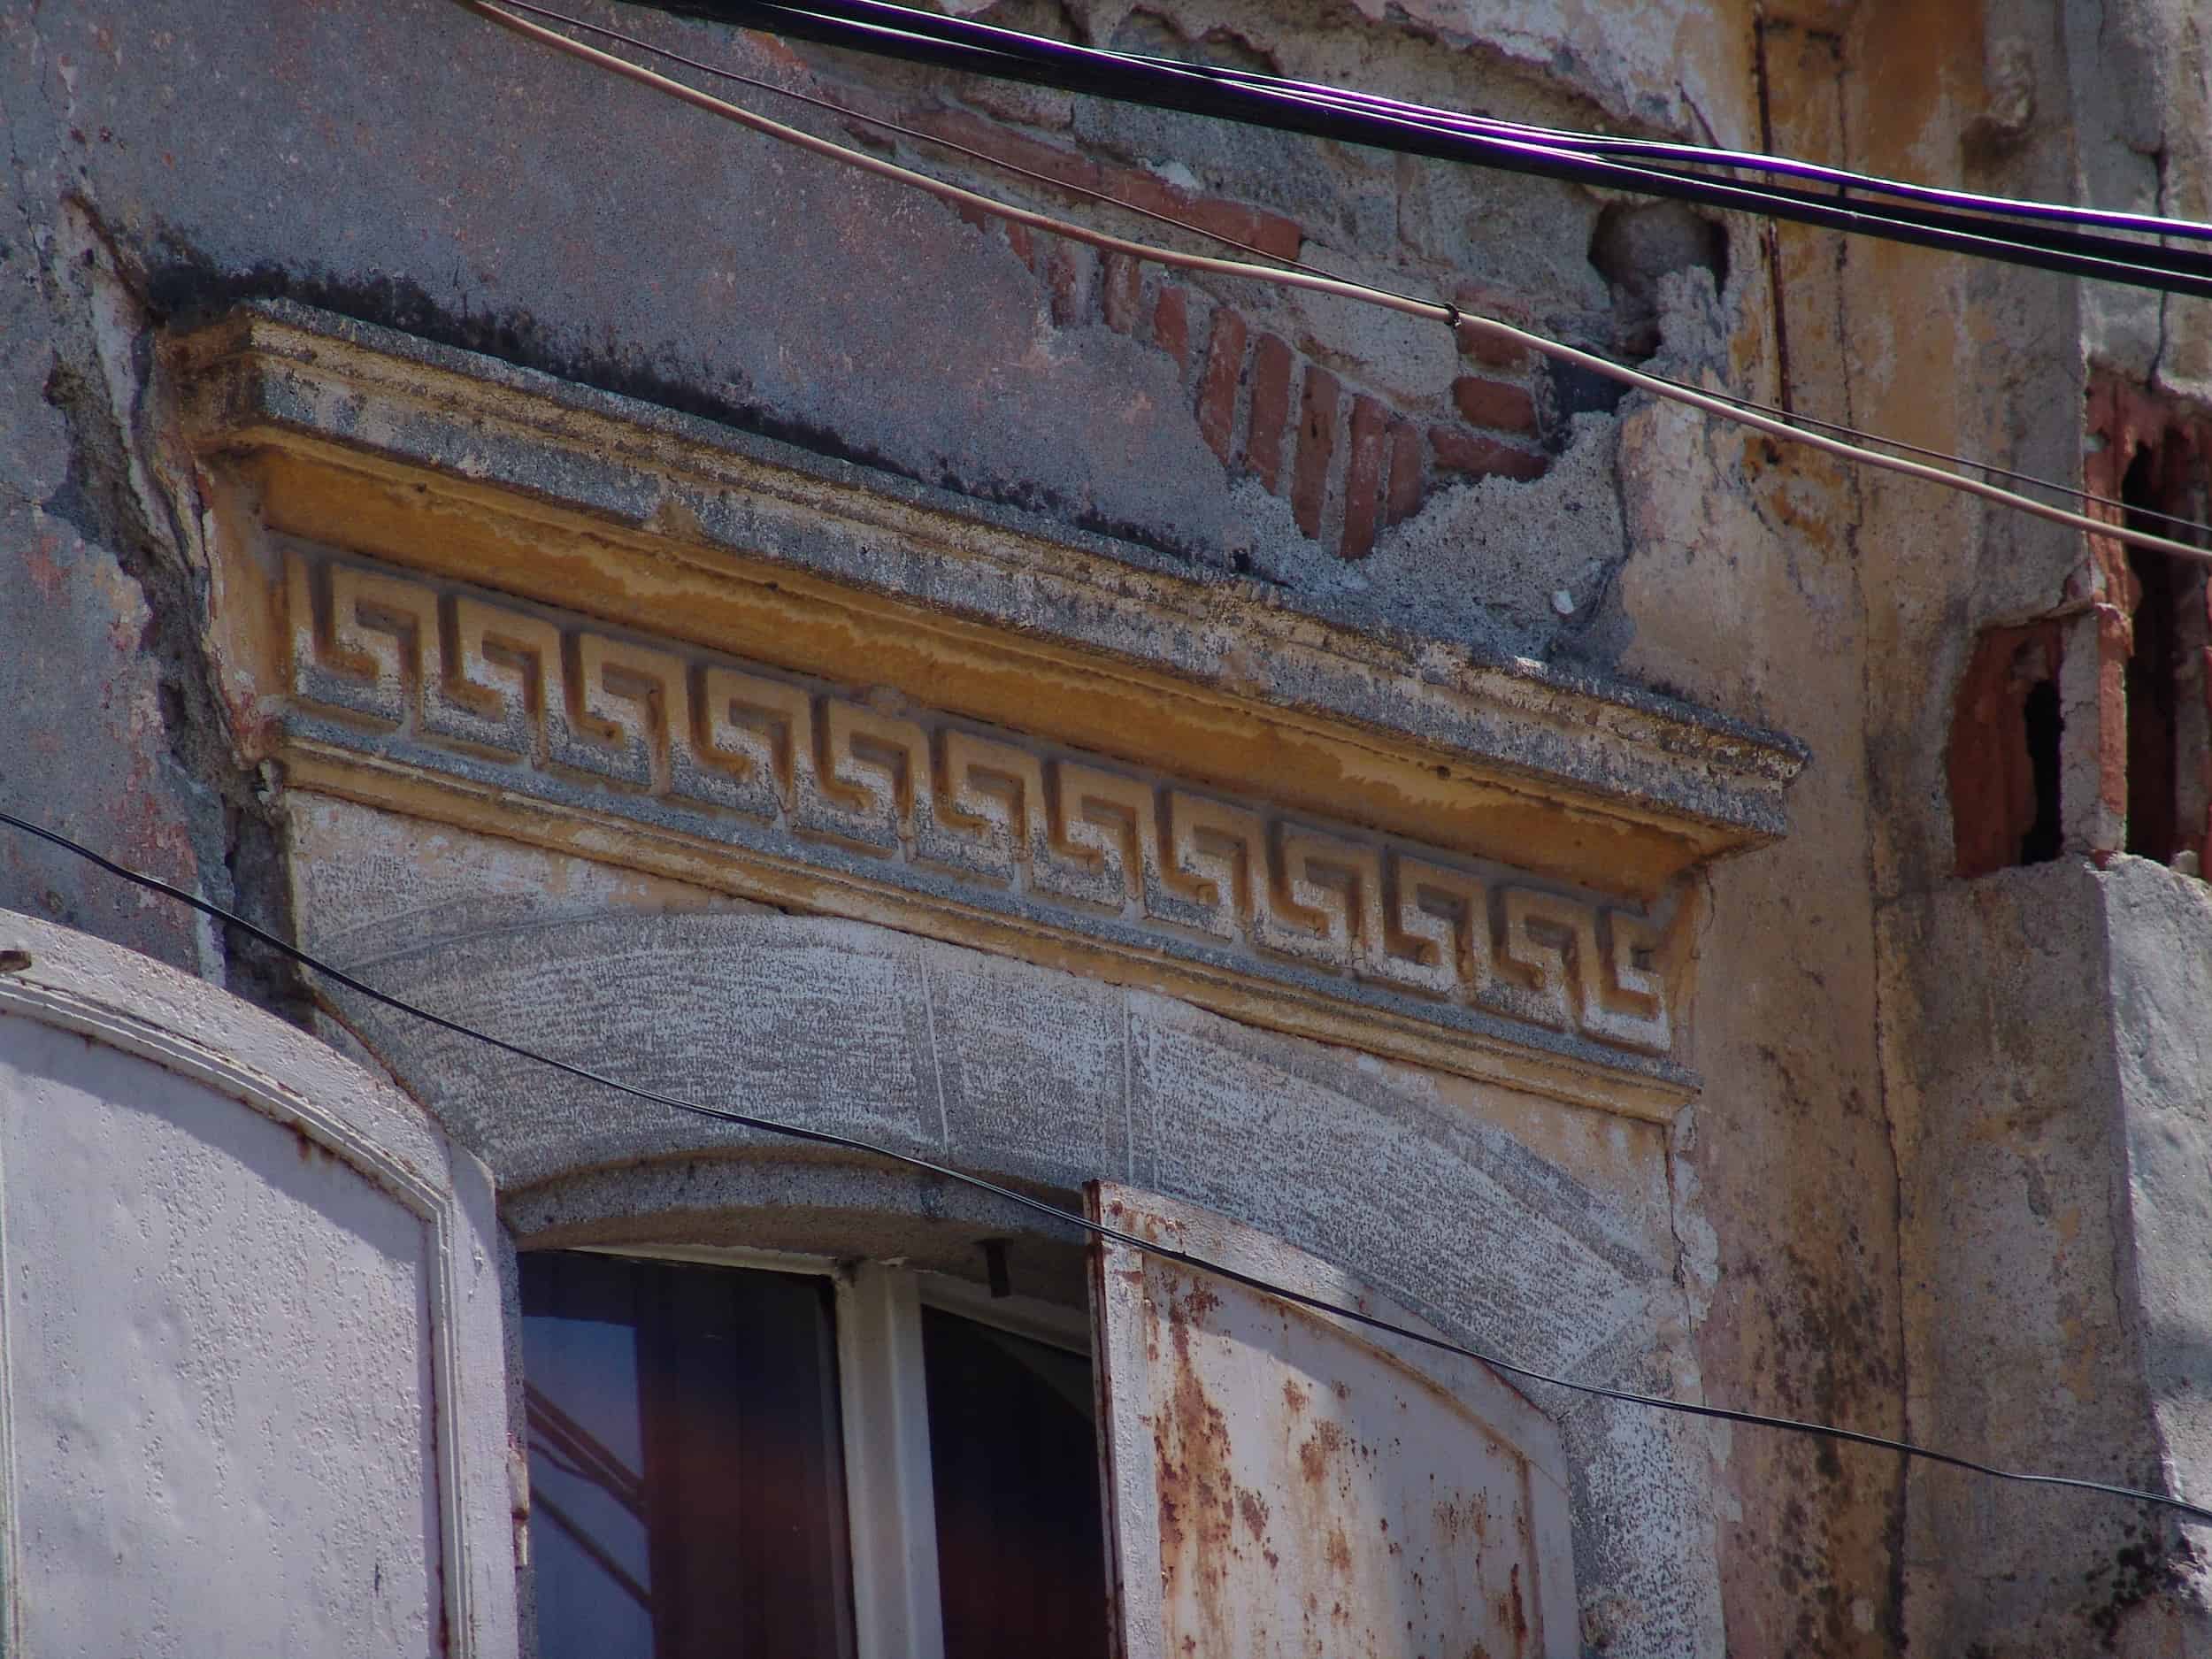 Greek key above a window in Bergama, Turkey